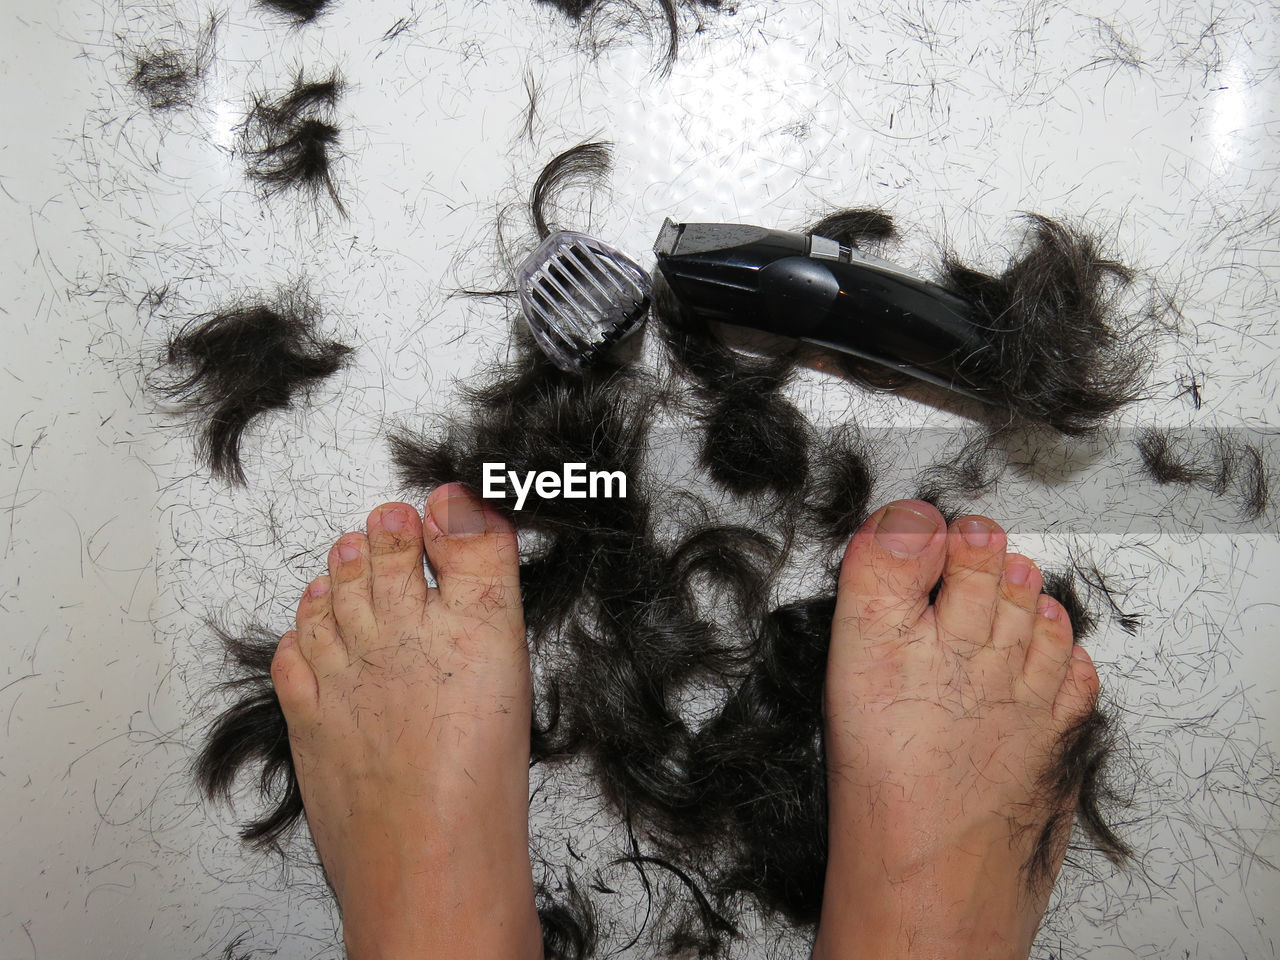 Self hair cut at home